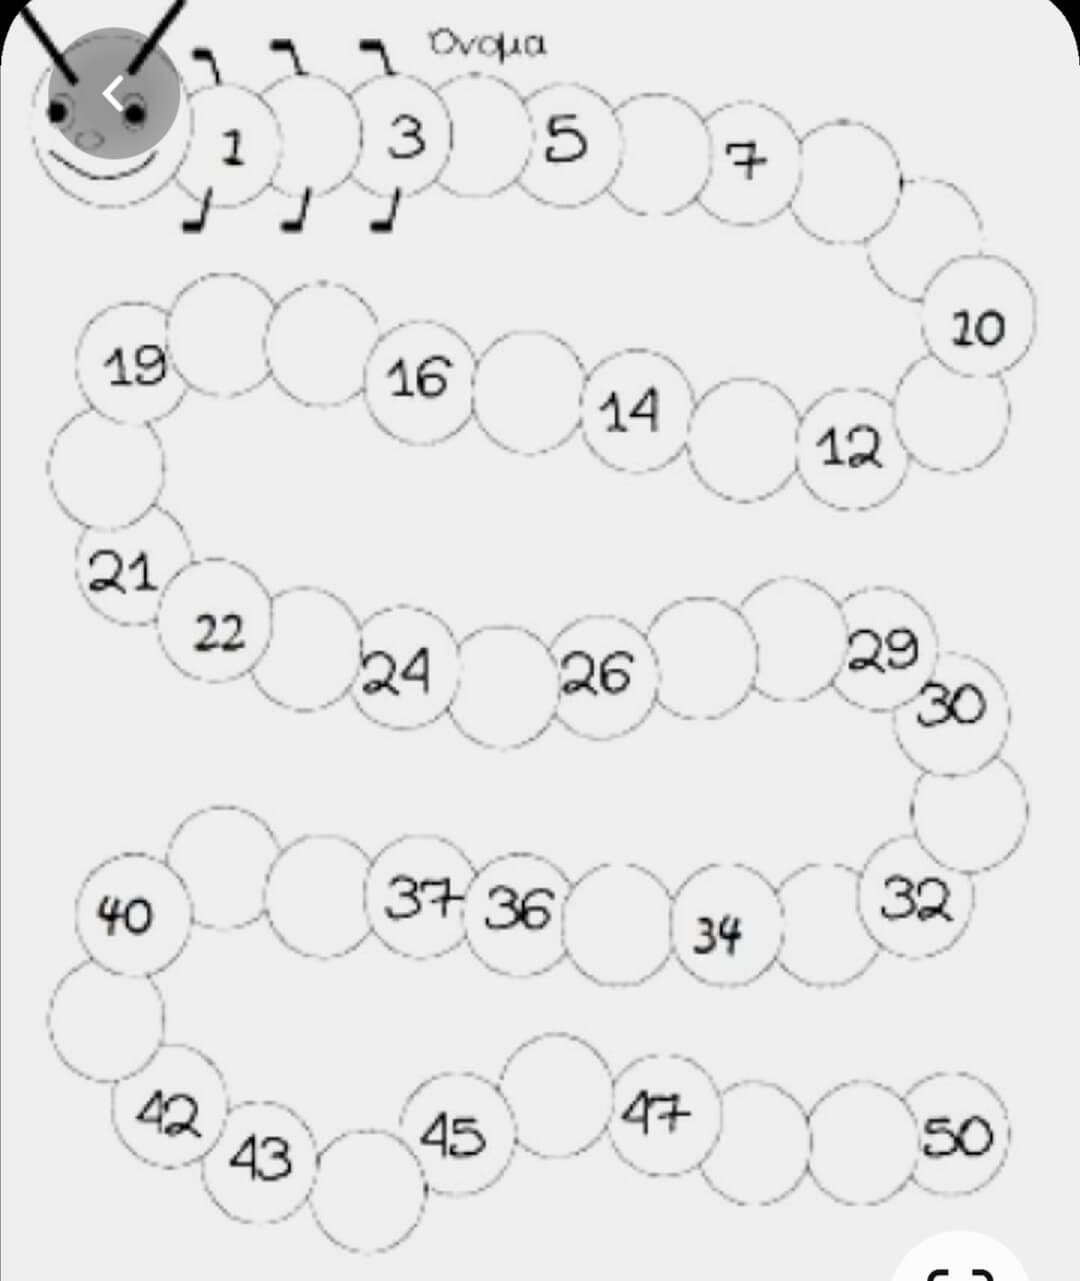 Змейка цифр. Математические Цепочки для дошкольников 6-7 лет. Впиши пропущенные цифры. Задания для дошкольников математические Цепочки. Математическая цепочка для дошколят.